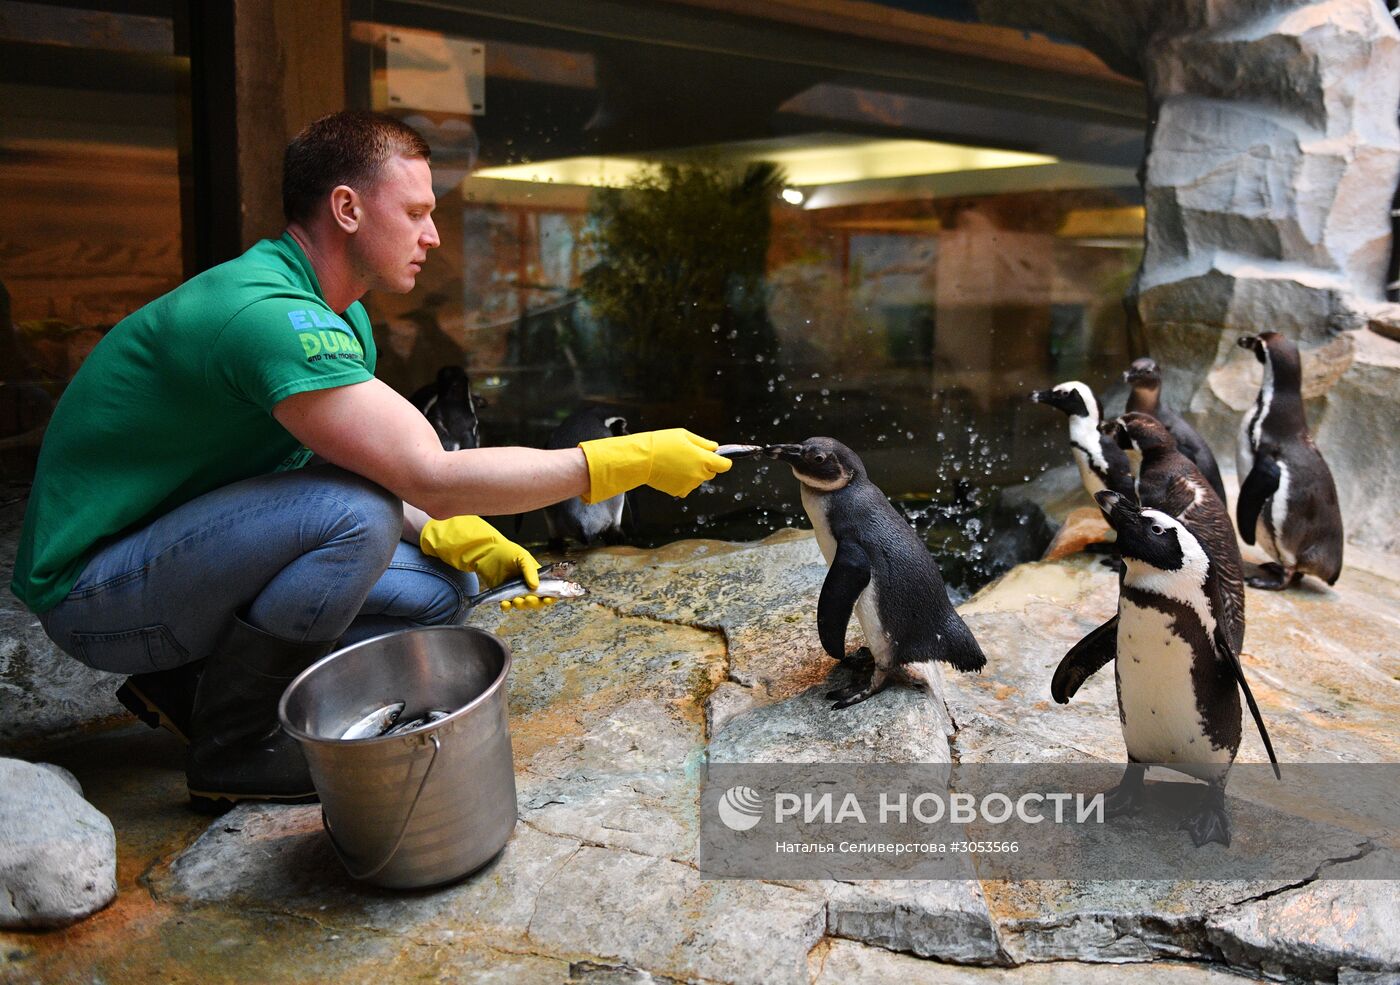 Взвешивание и кормление пингвинов Гумбольдта в Московском зоопарке